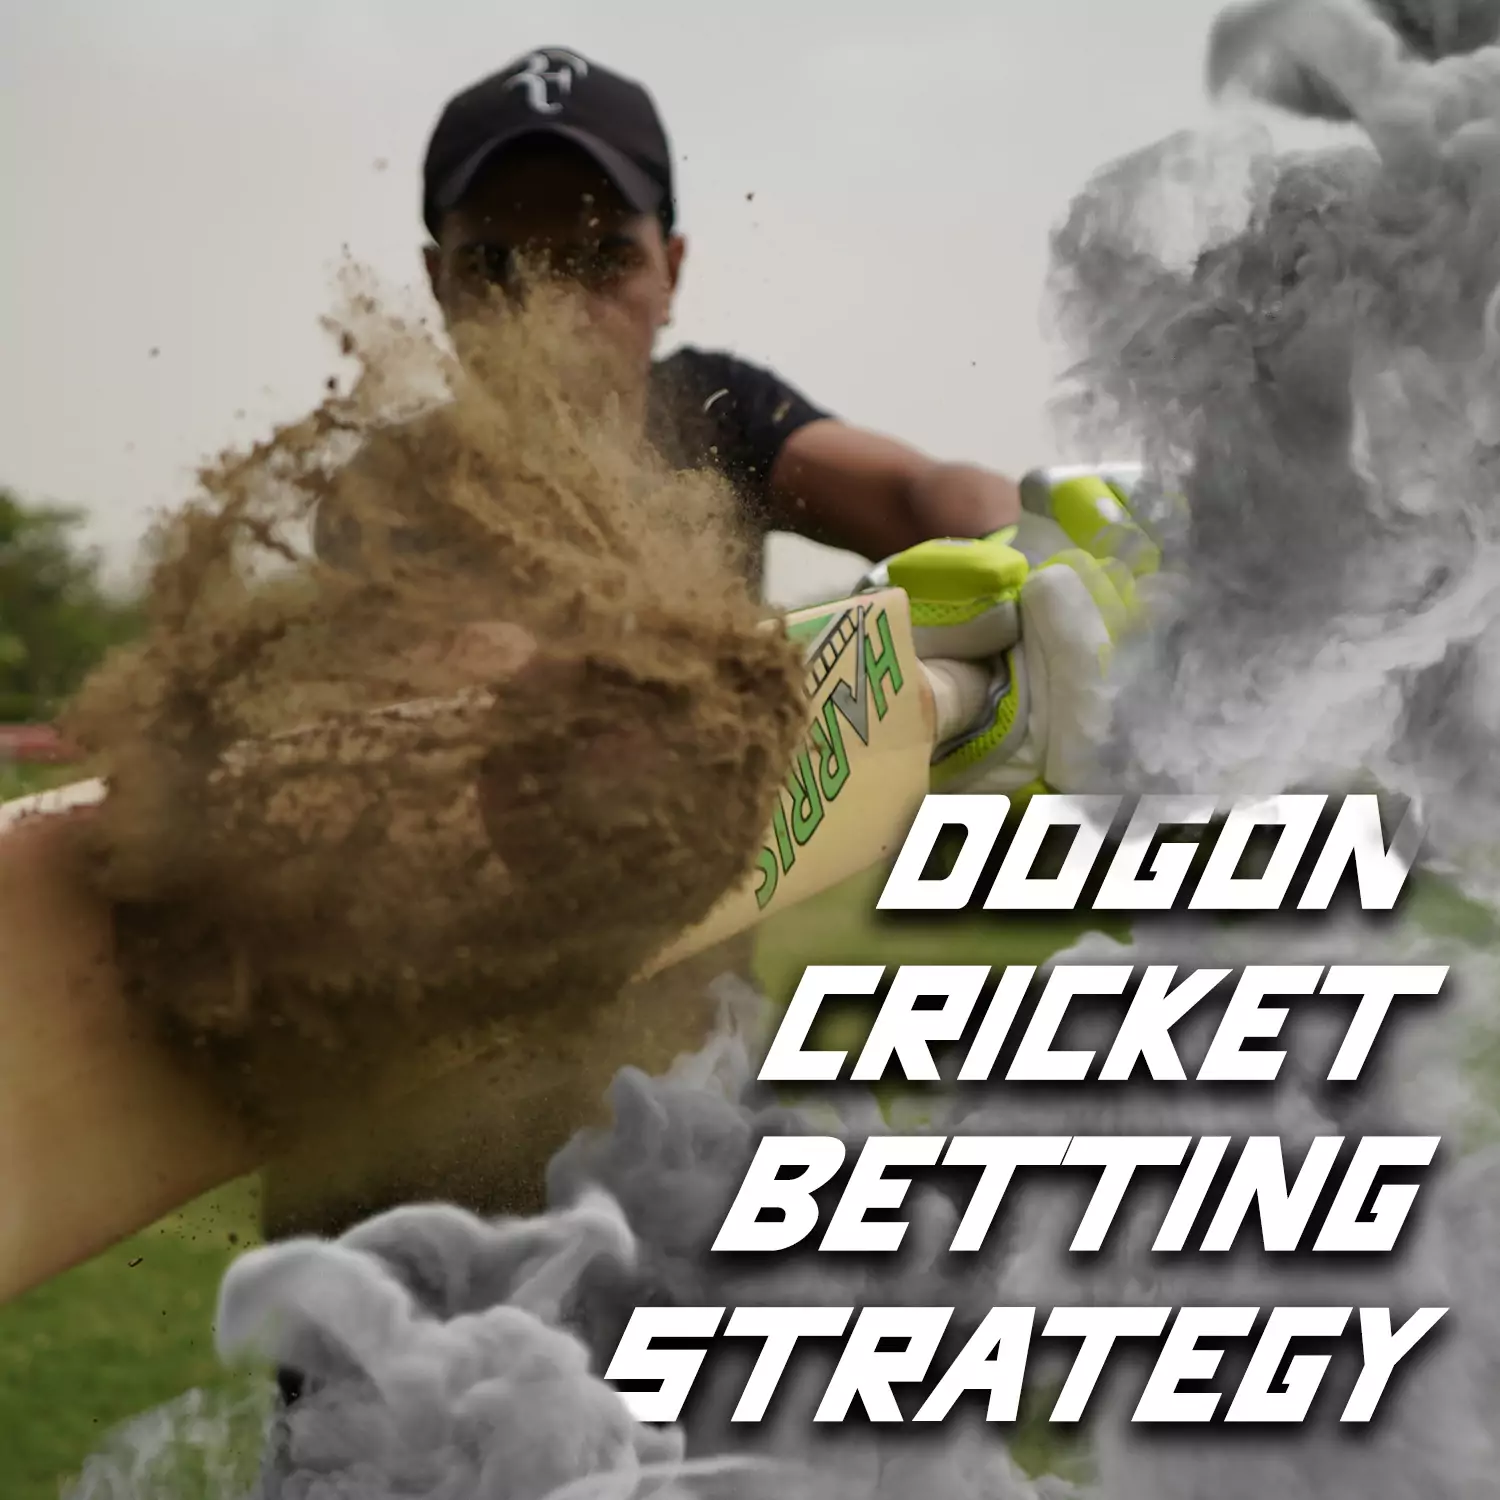 प्रभावी क्रिकेट सट्टेबाजी के लिए डोगन सट्टेबाजी रणनीति का प्रयोग करें।